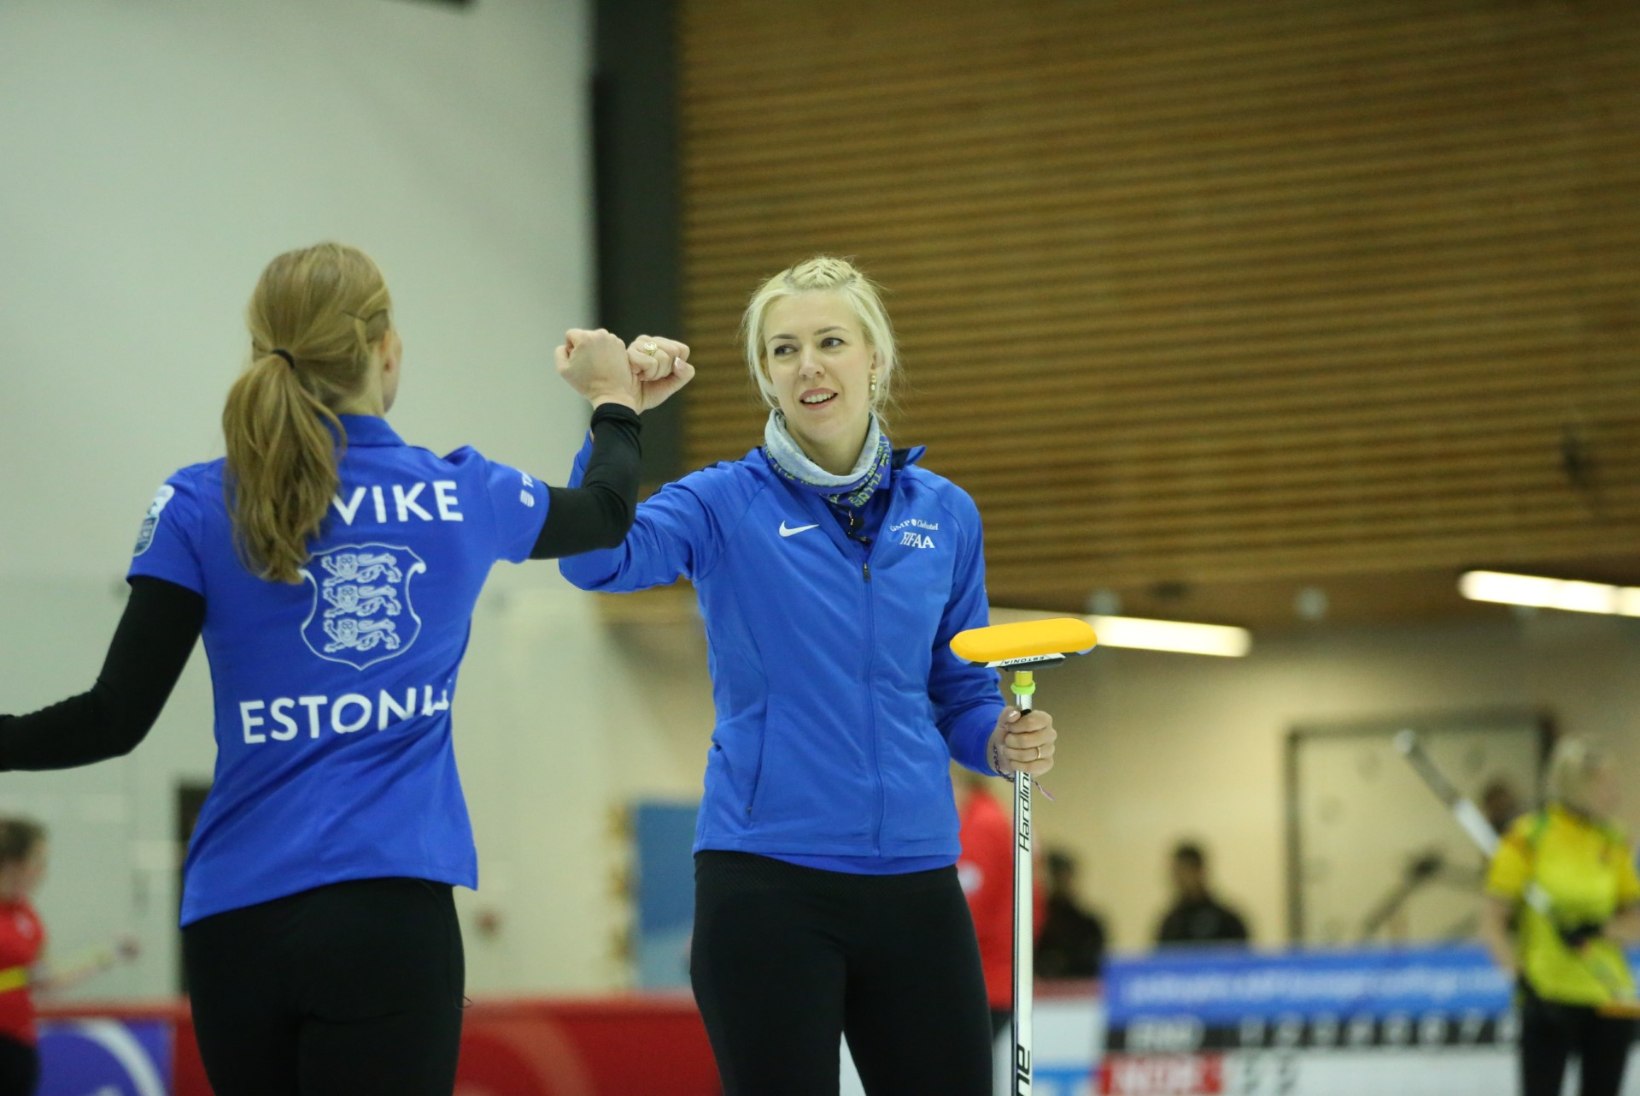 FOTOD | Otsustavatel visetel eksinud Eesti naiskond alustas kodust curlingu EMi kaotusega